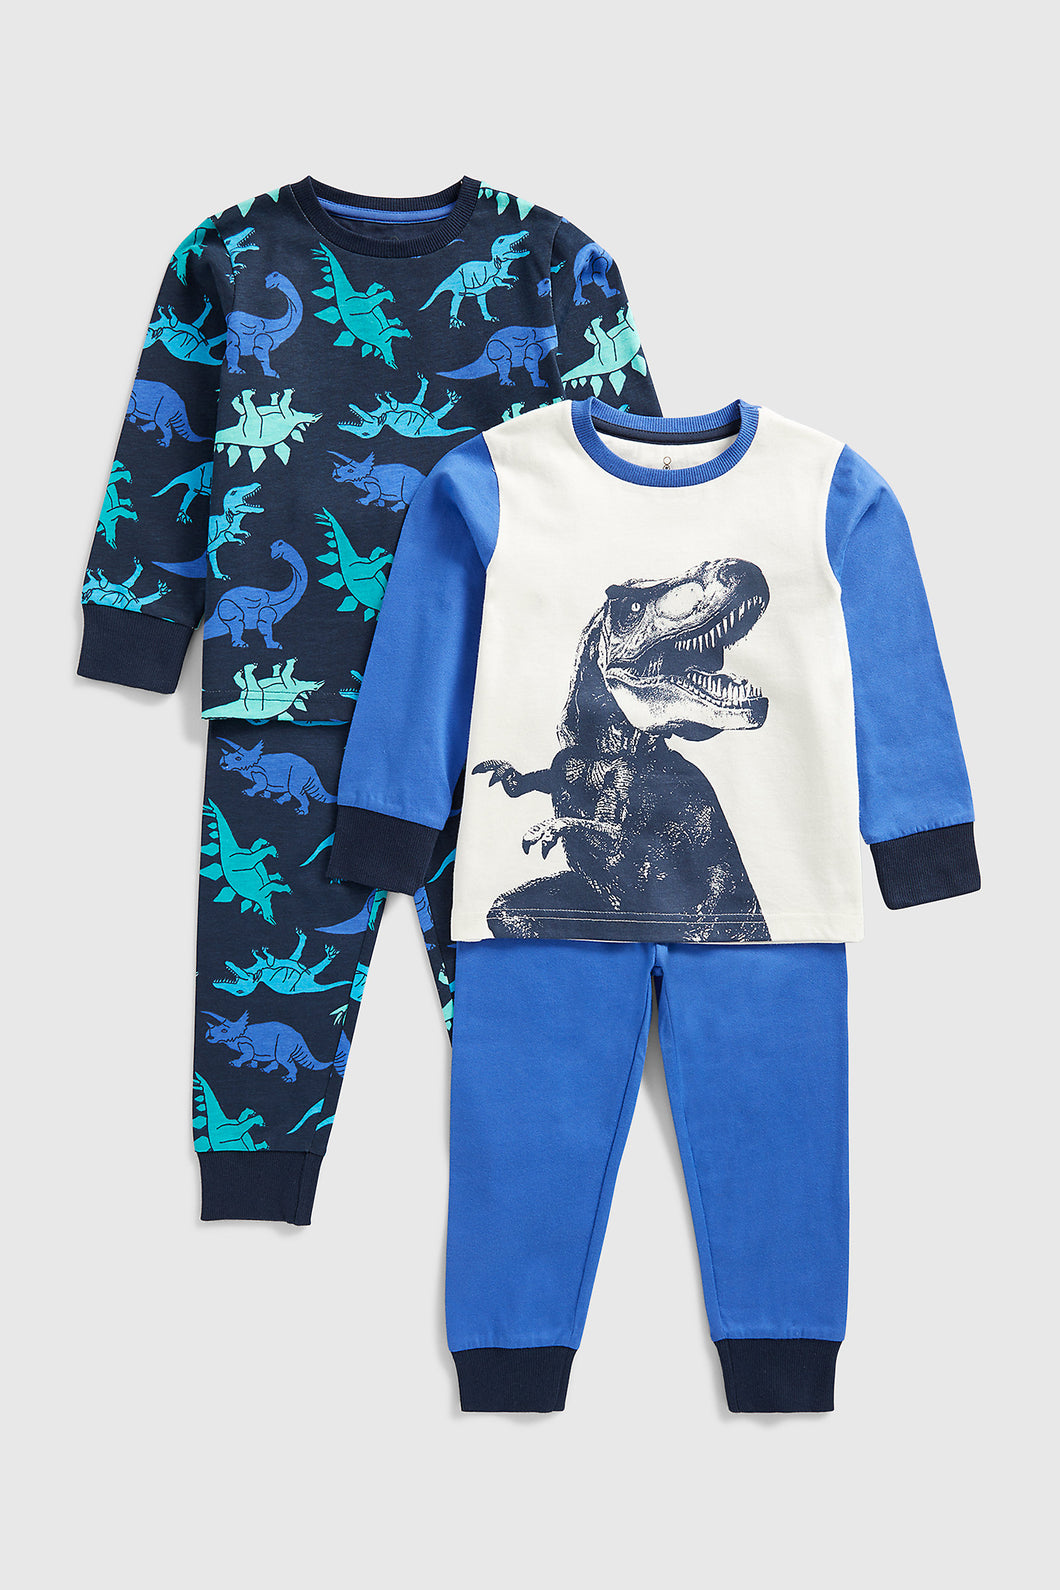 Mothercare Dinosaur Pyjamas - 2 Pack